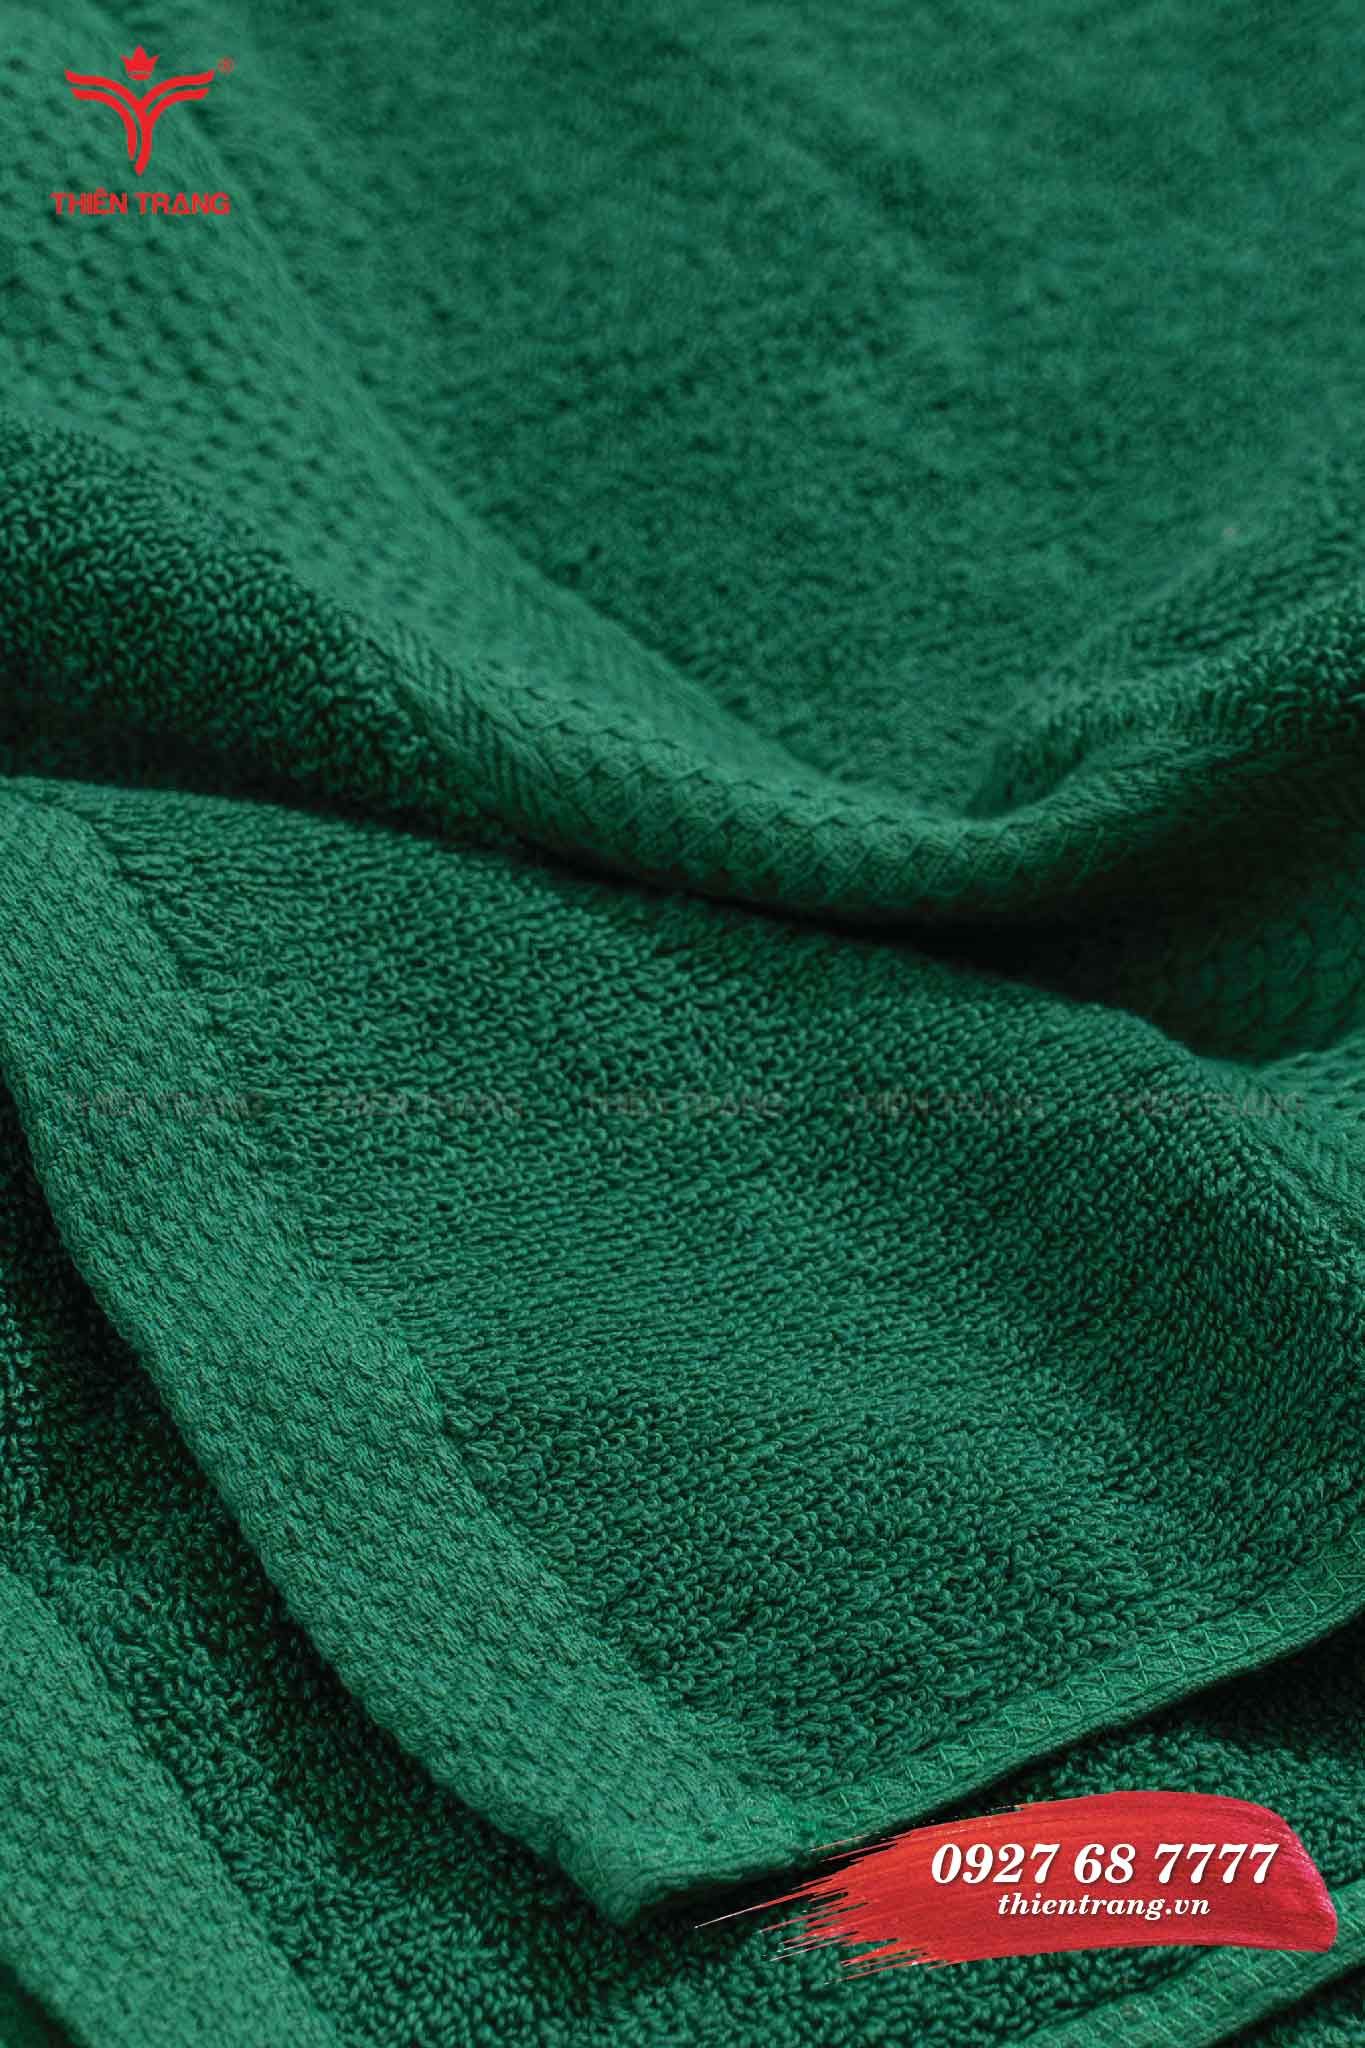 Mẫu khăn body spa màu xanh lá cây đẹp